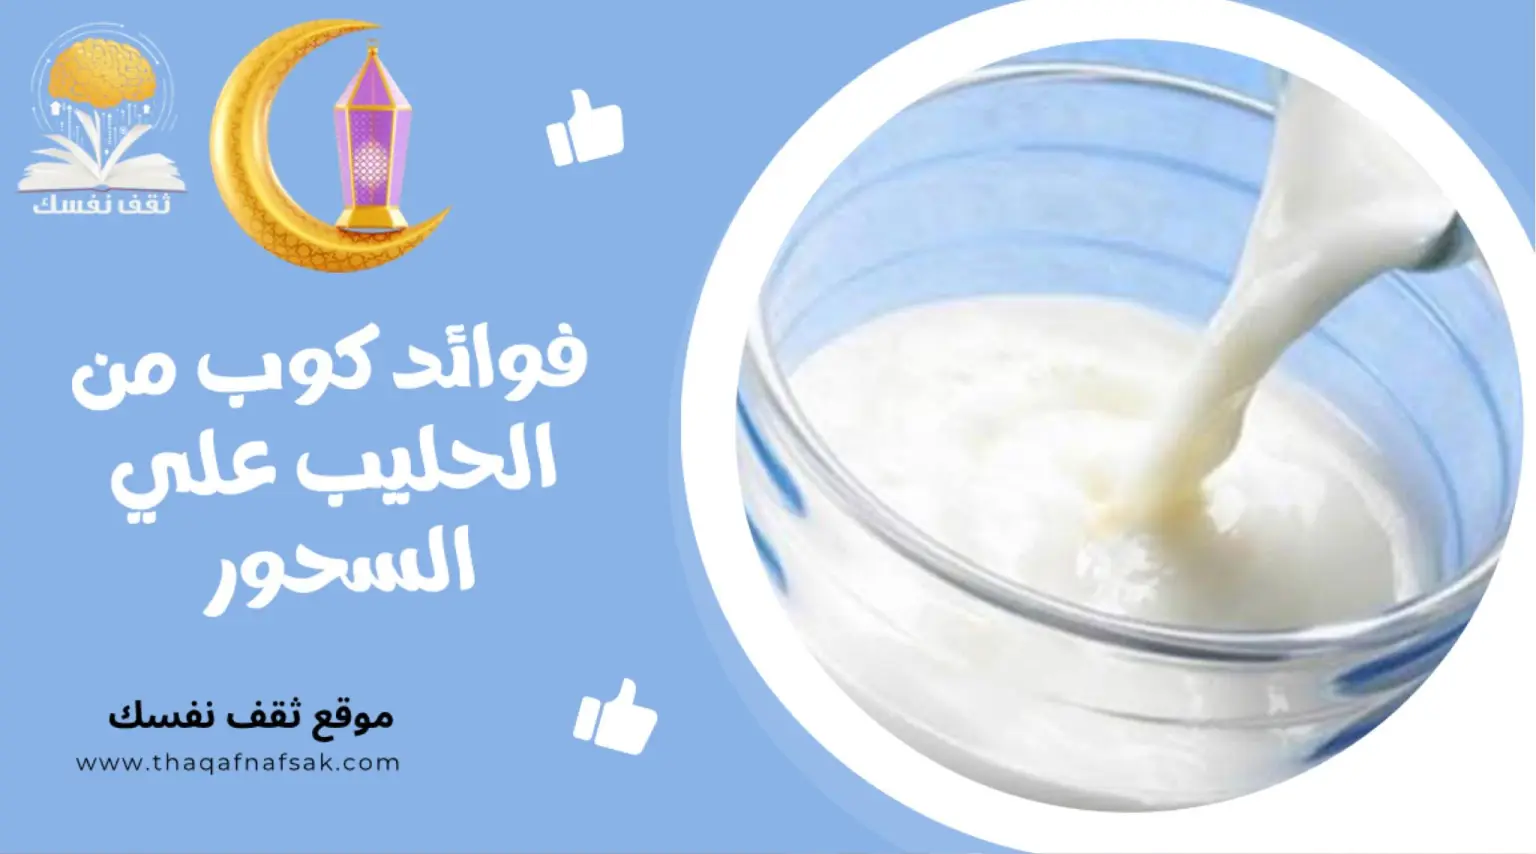 صورة فوائد تناول كوب من الحليب على السحور كنز لصحة الصائم